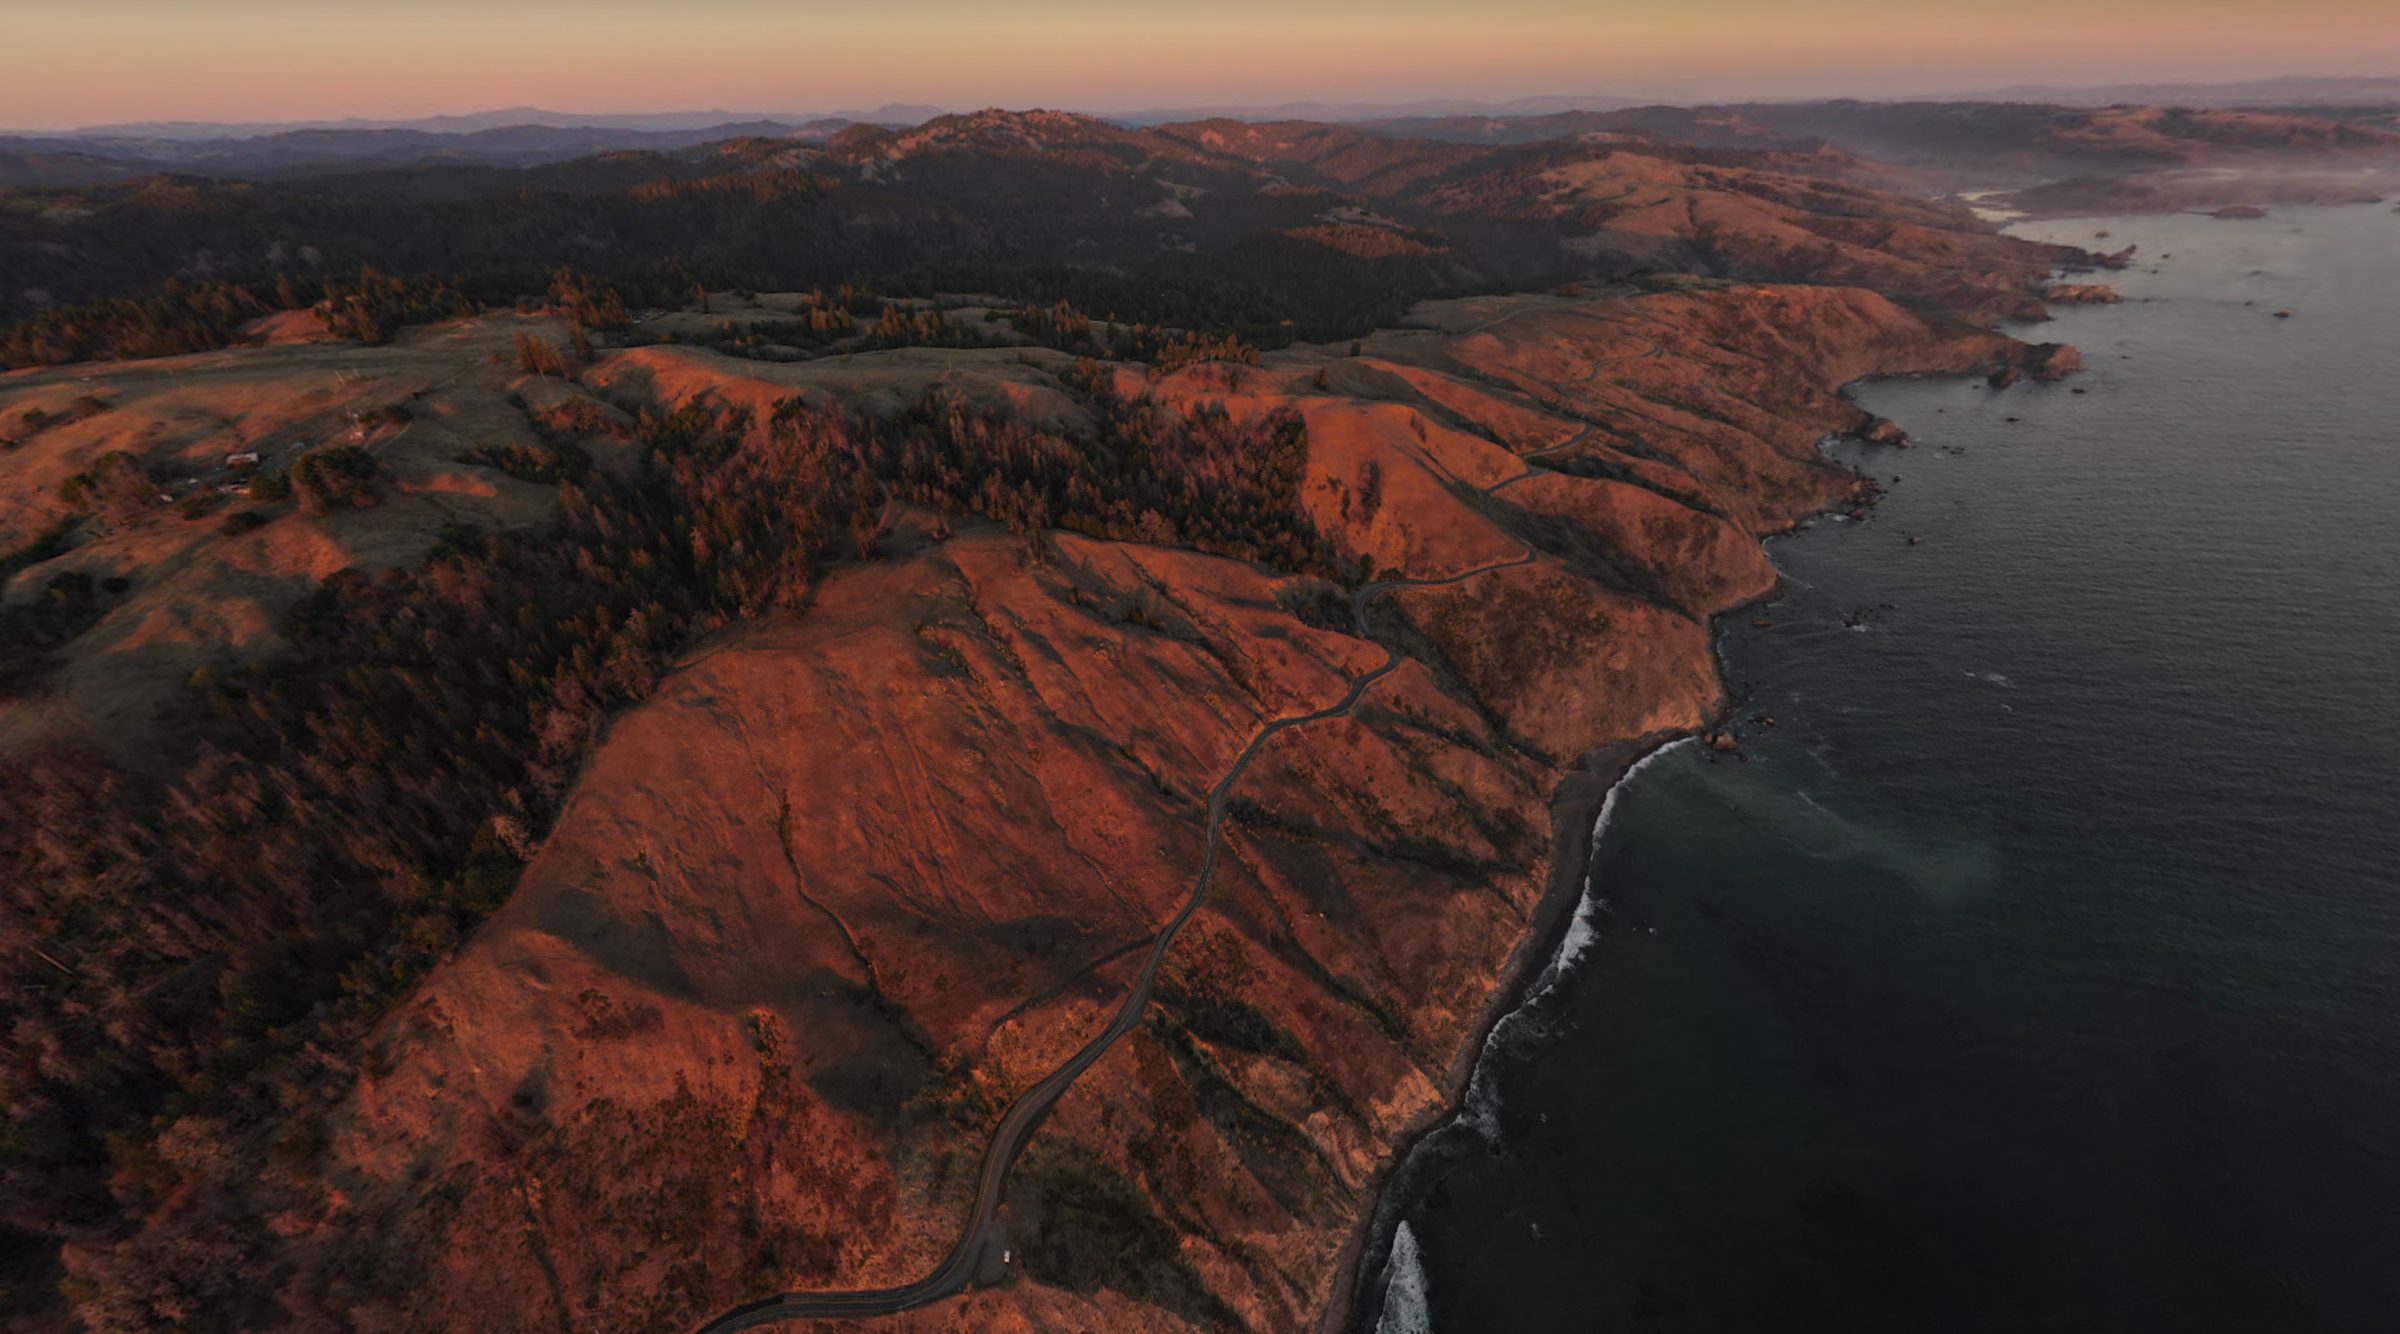 L'autostrada costiera ondulata e tortuosa Highway 1 / Route 101 in California dall'aria con il drone